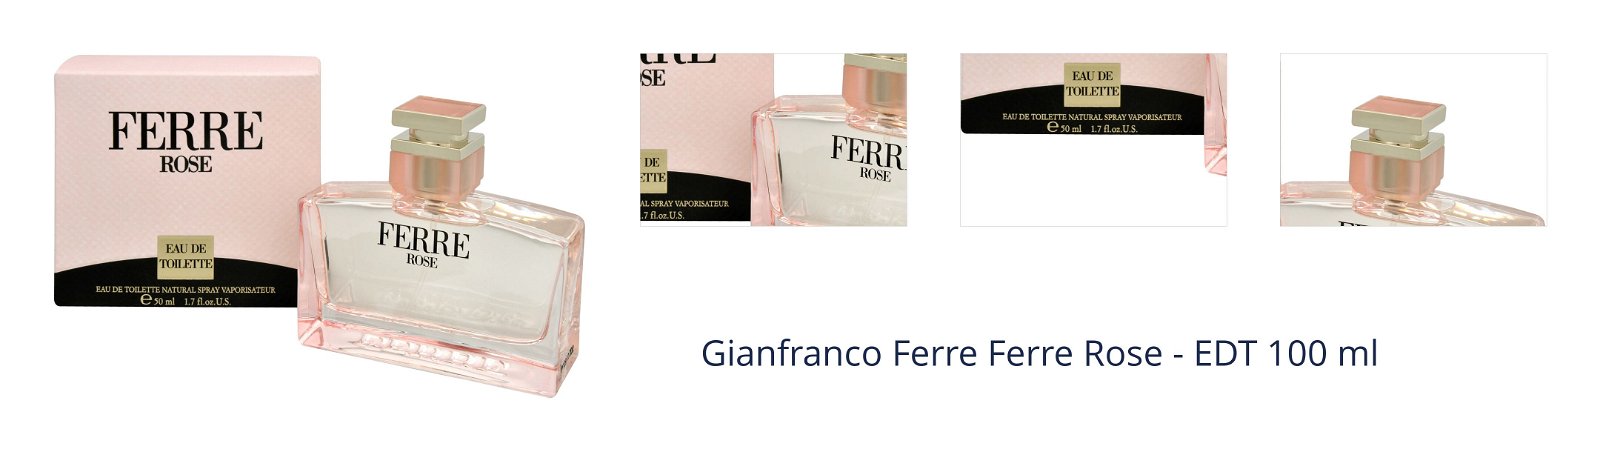 Gianfranco Ferre Ferre Rose - EDT 100 ml 1